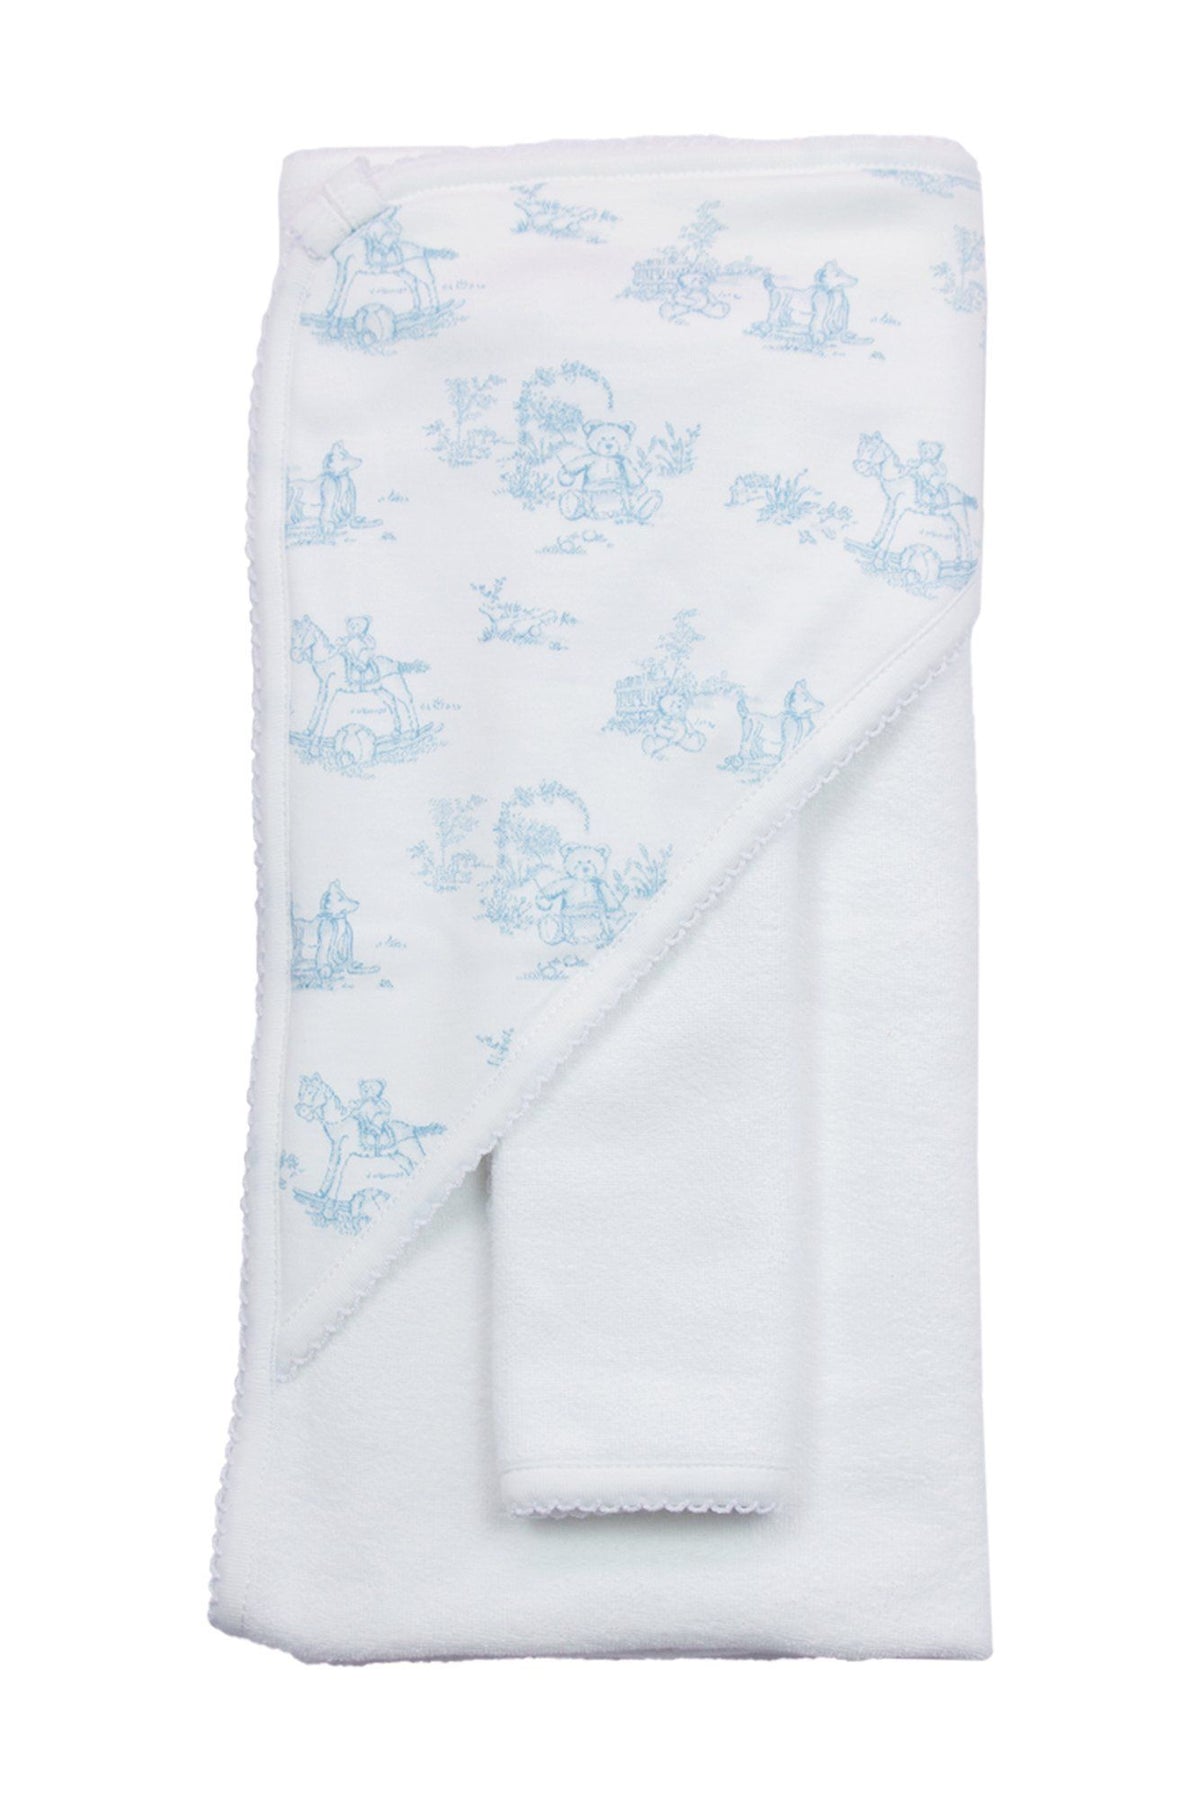 Toile Baby Hooded Towel: Blue Teddy Bears